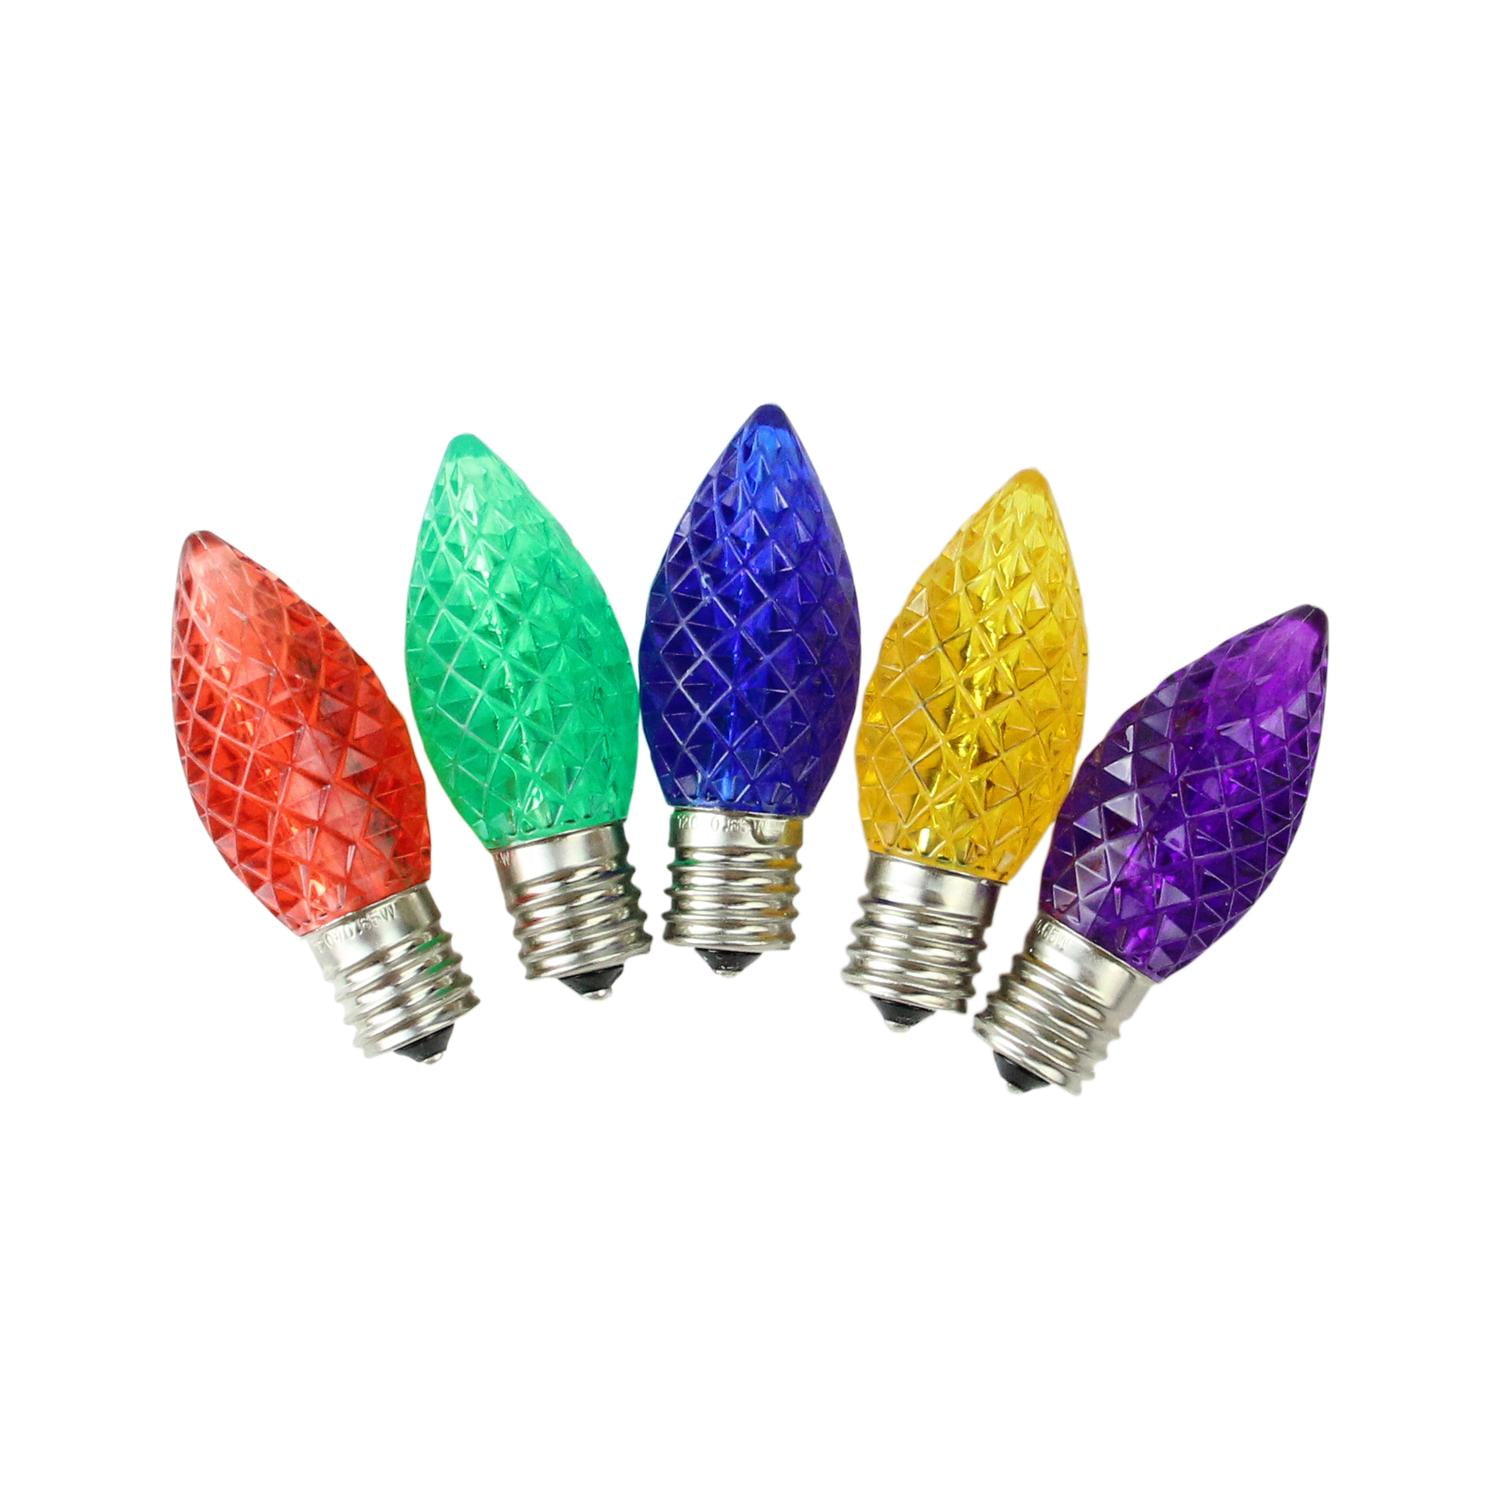 C-9 Christmas Light Replacement Bulbs Multi Color Lights 25 Bulbs 